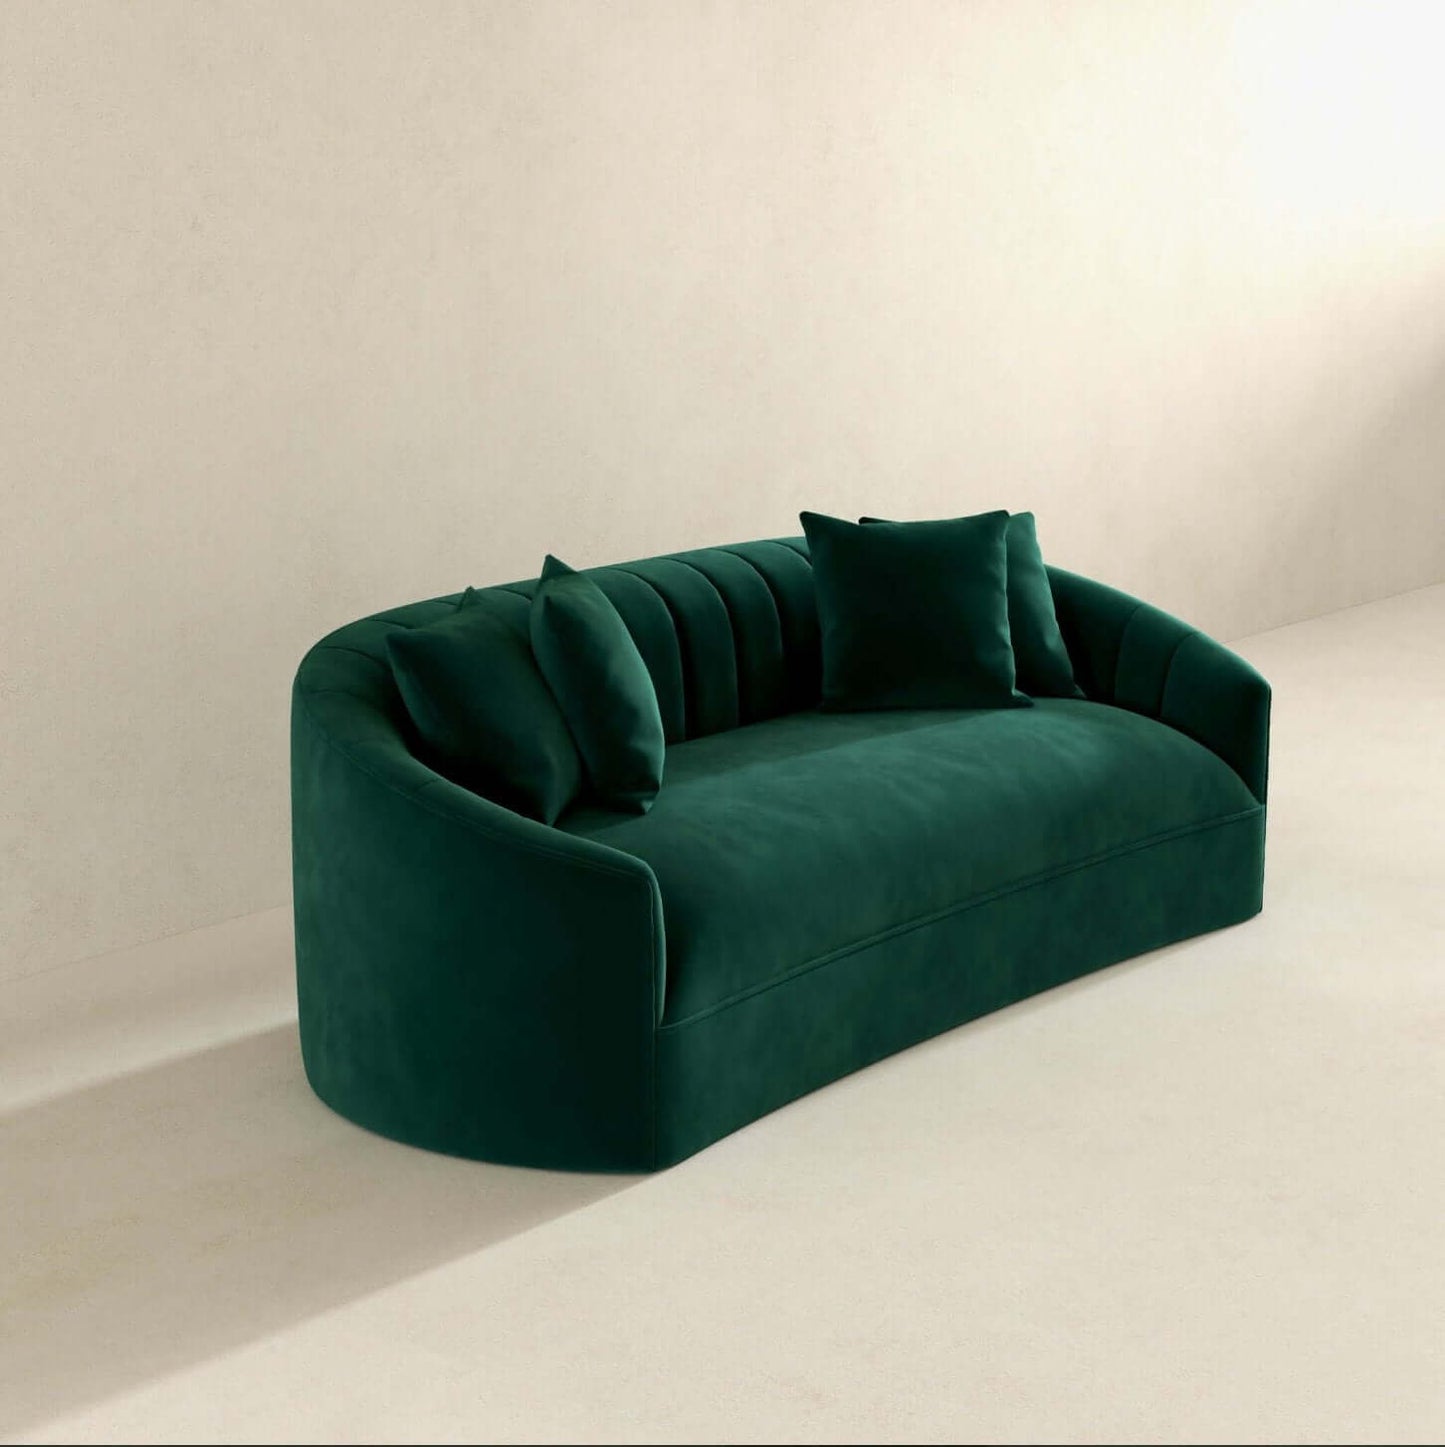 Kante Curved Channel Tufted Velvet Sofa in Green 88” - Revel Sofa 